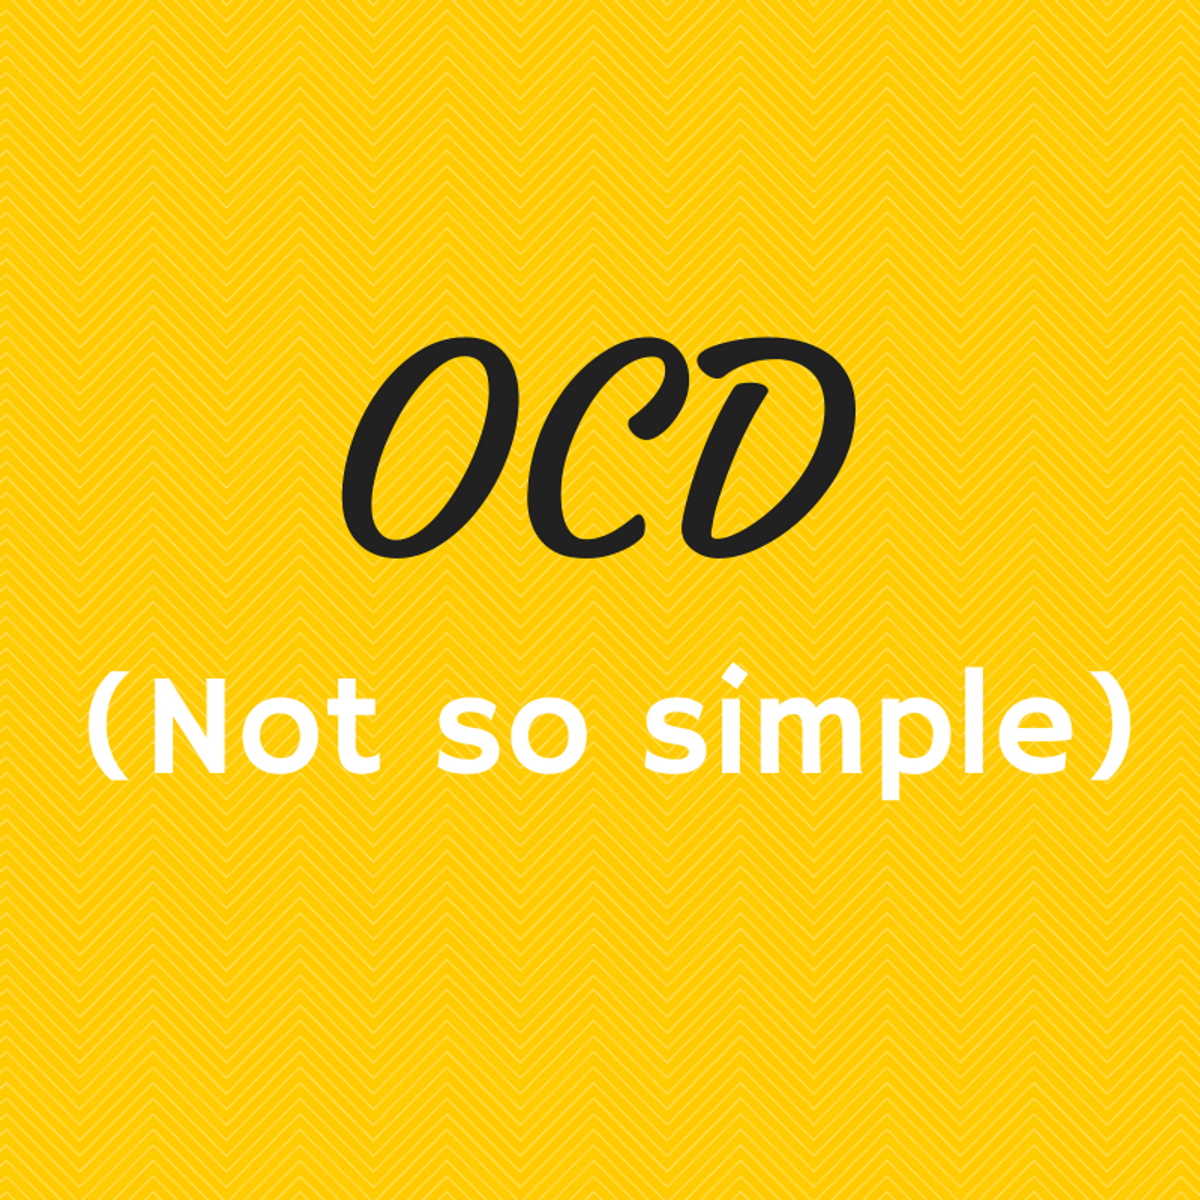 OCD Isn't Cute